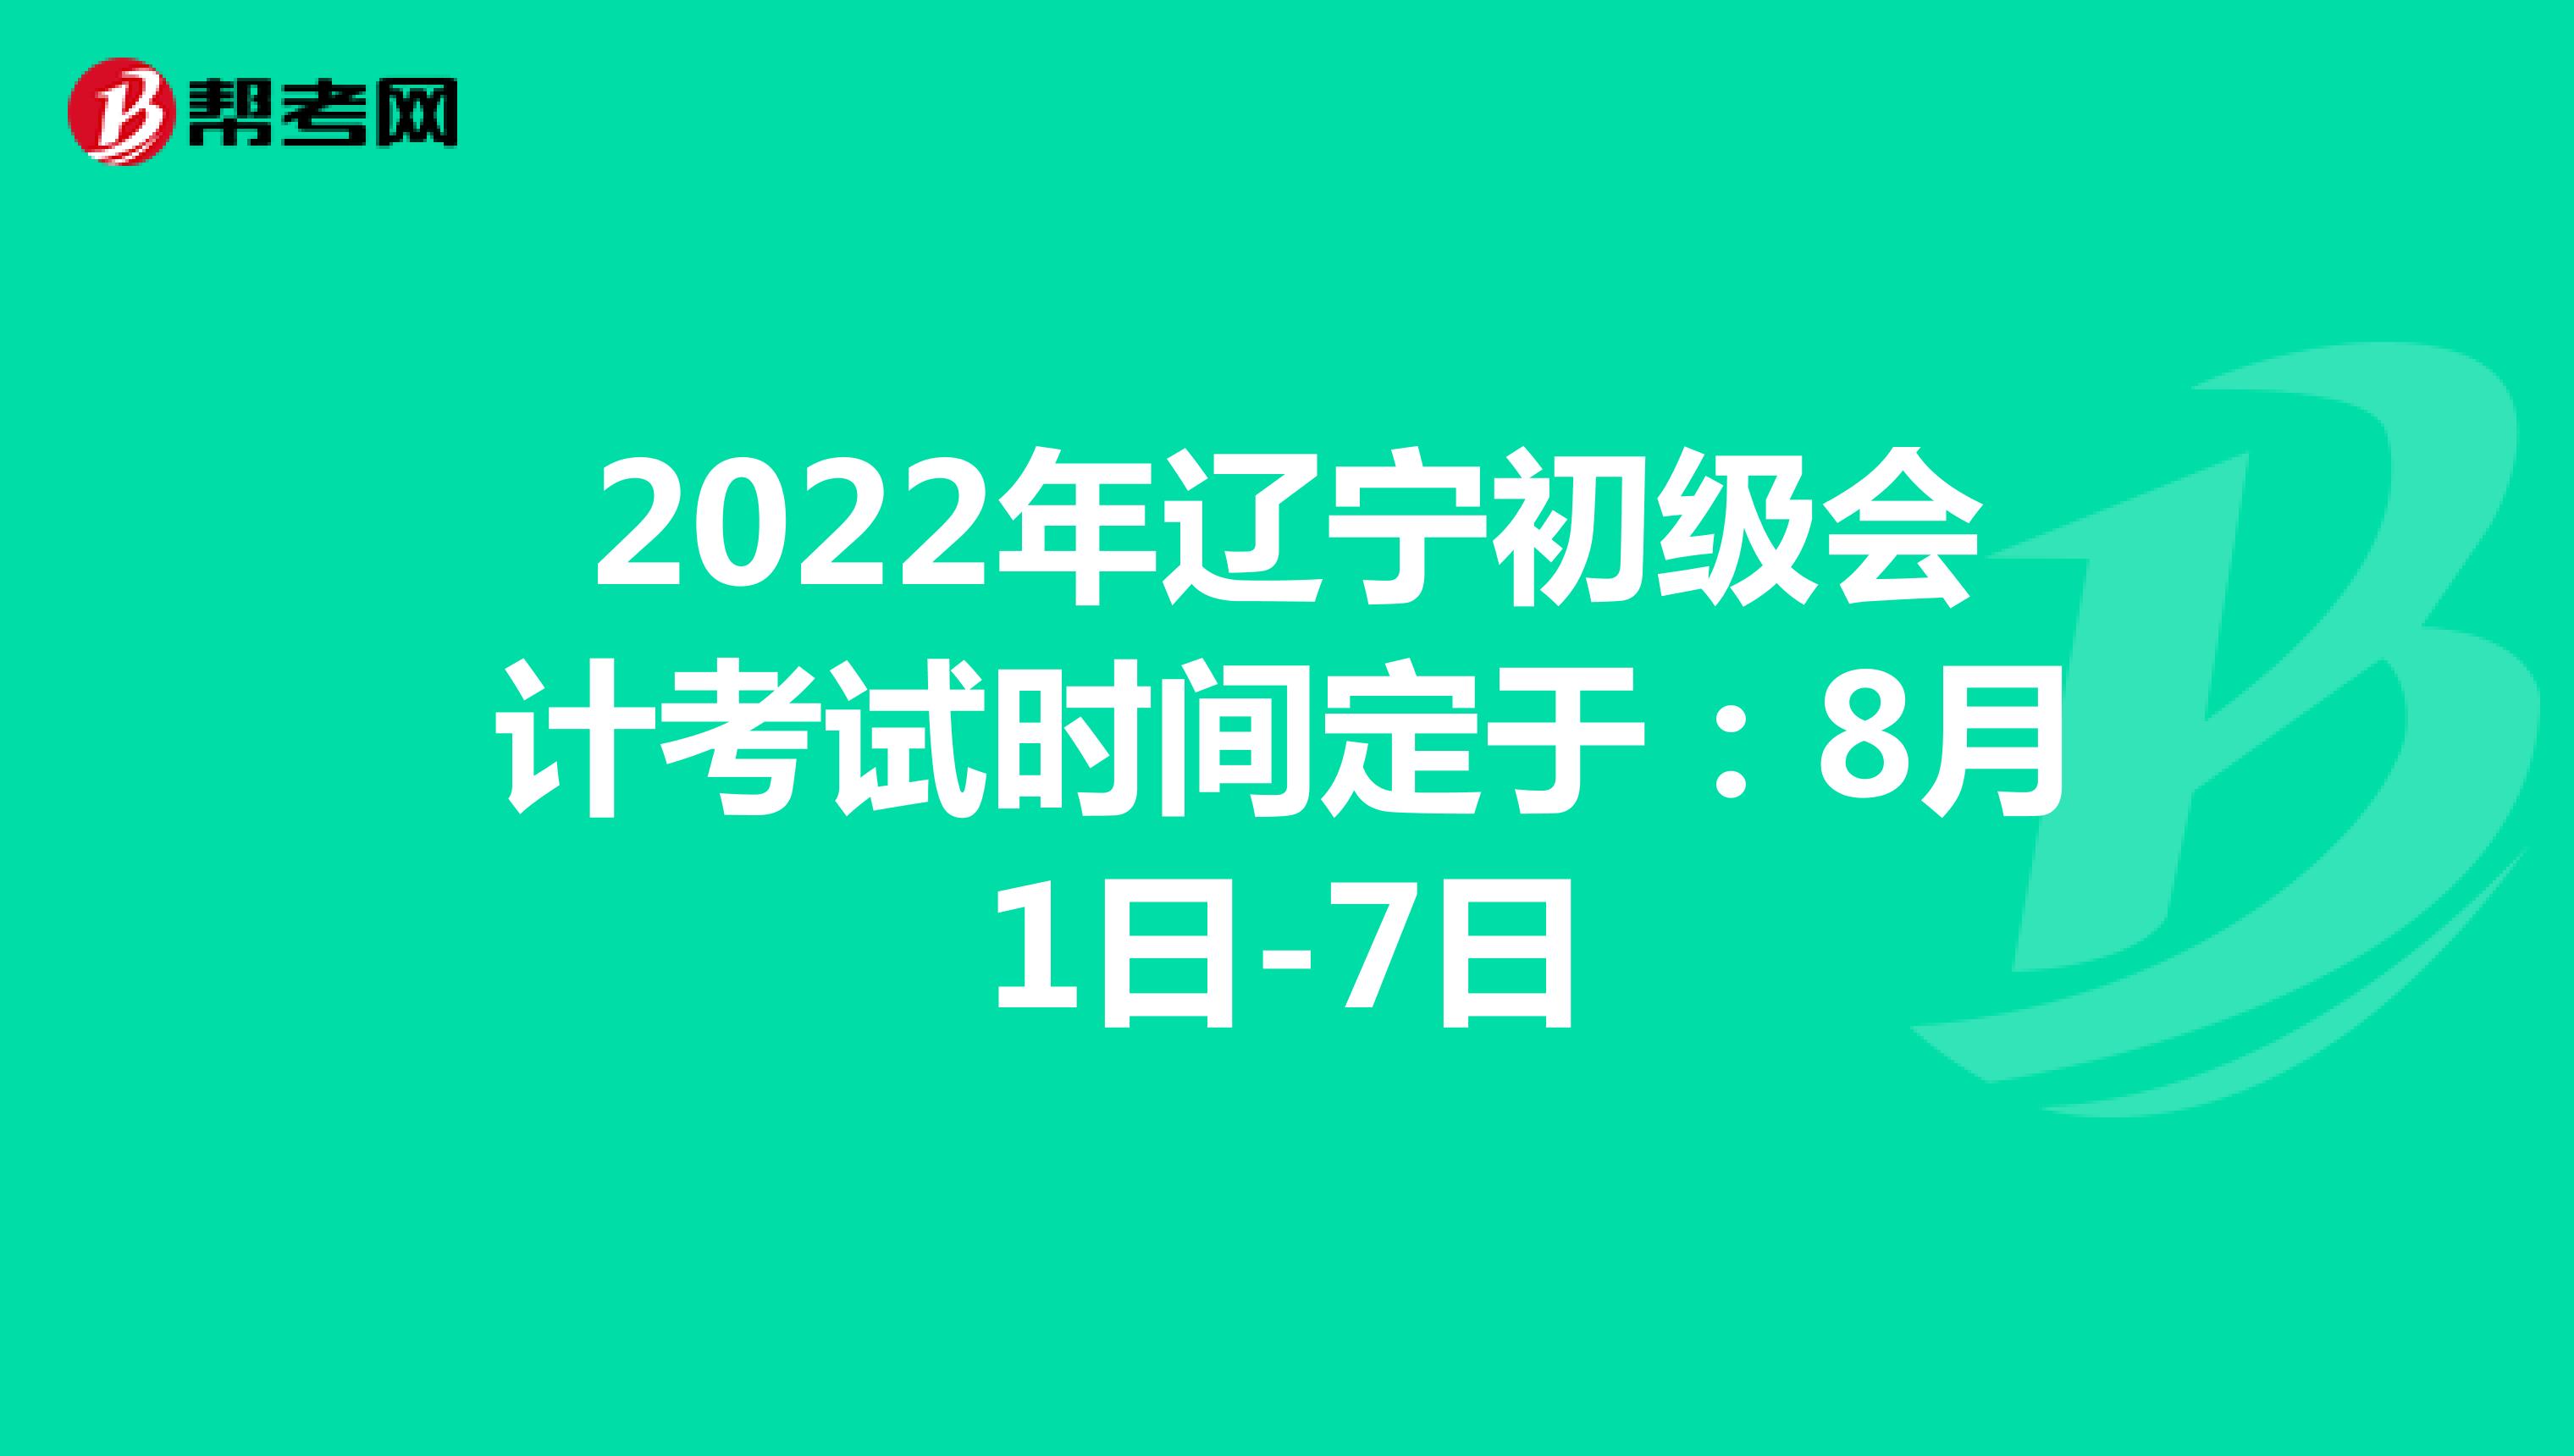 2022年辽宁初级会计考试时间定于：8月1日-7日